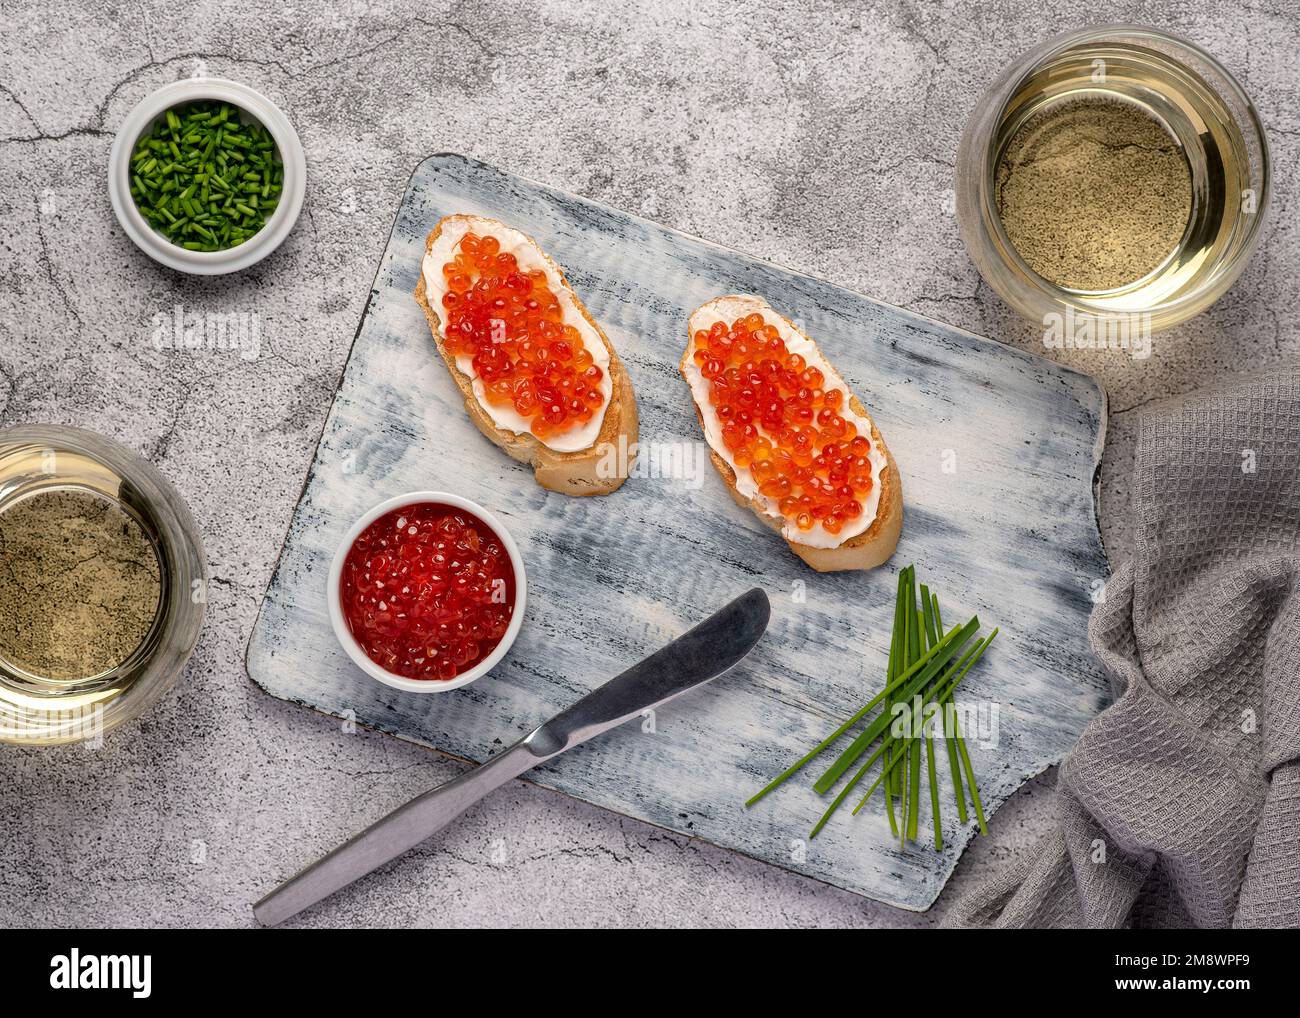 Fotografia gastronomica di sandwich con caviale, erba cipollina, vino bianco, antipasto, delicatezza Foto Stock